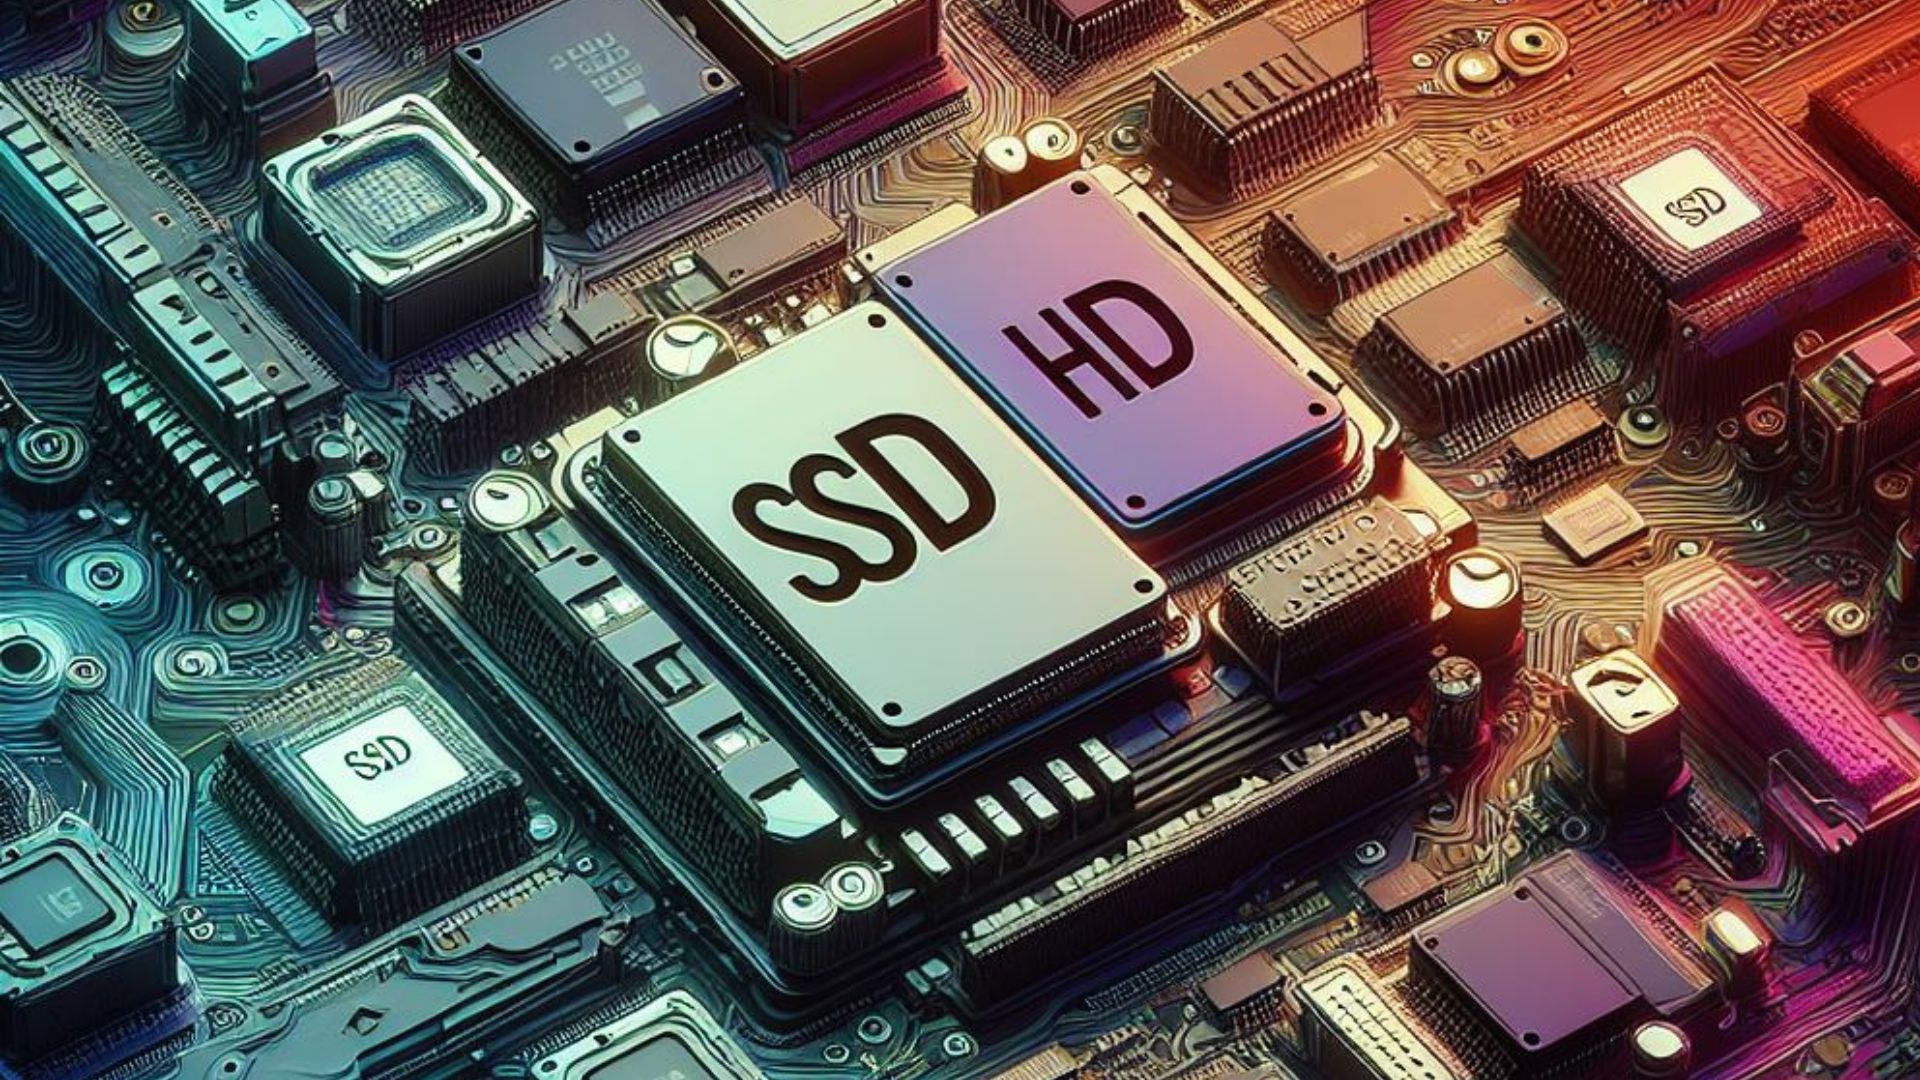 SSD ou HD Descubra o melhor tipo de armazenamento para você